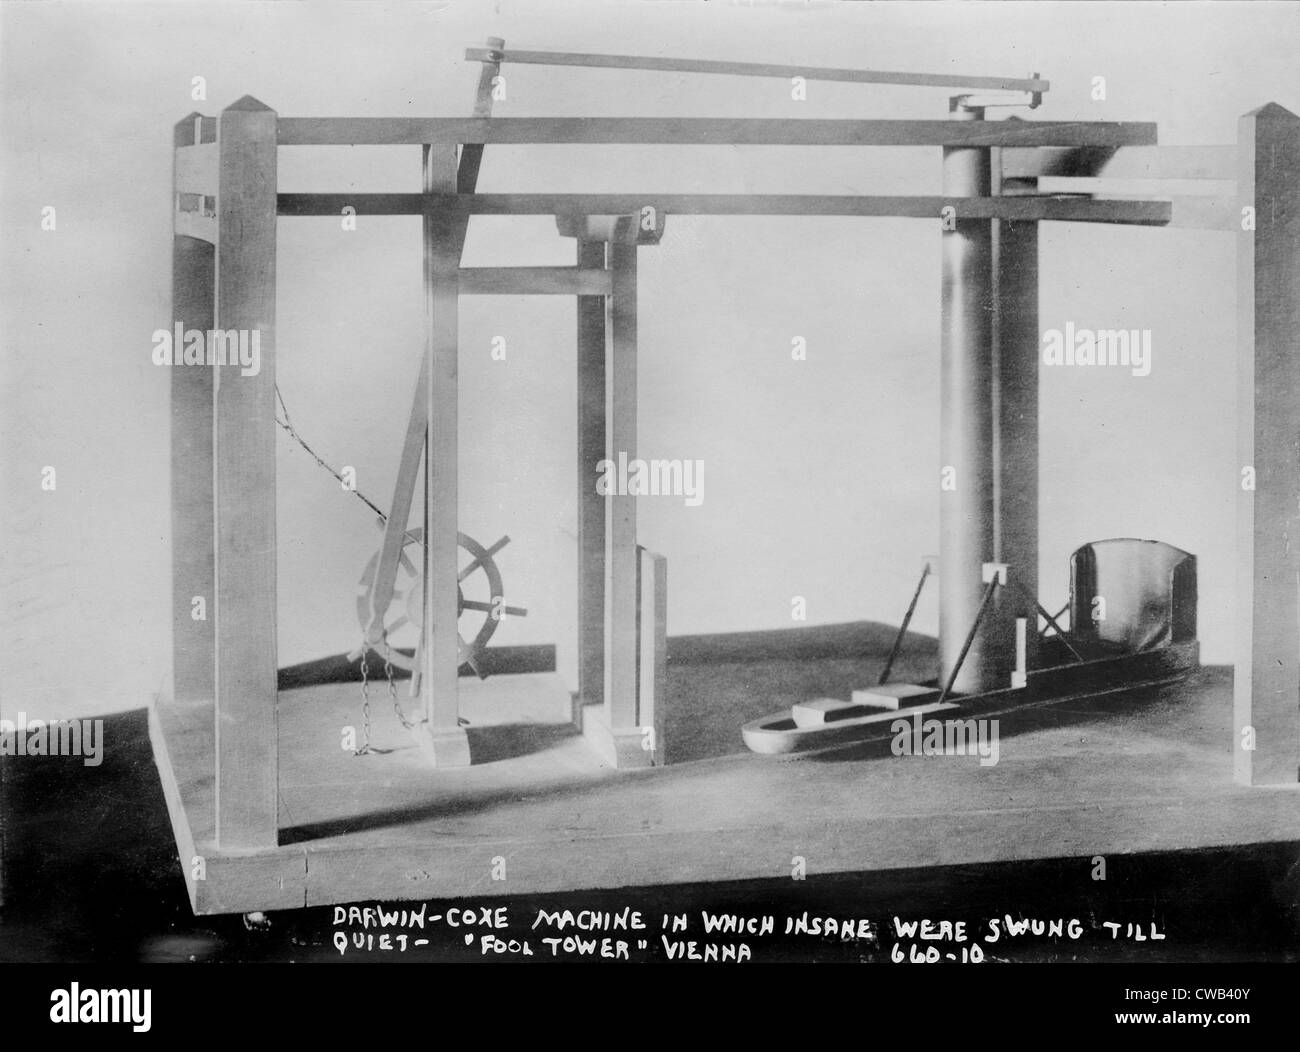 Darwin-Coxe Maschine, wurden in denen Geisteskranke geschwungen bis ruhig, von der Narrenturm (aka The Narrenturm), Heim für psychisch Kranke, Stockfoto